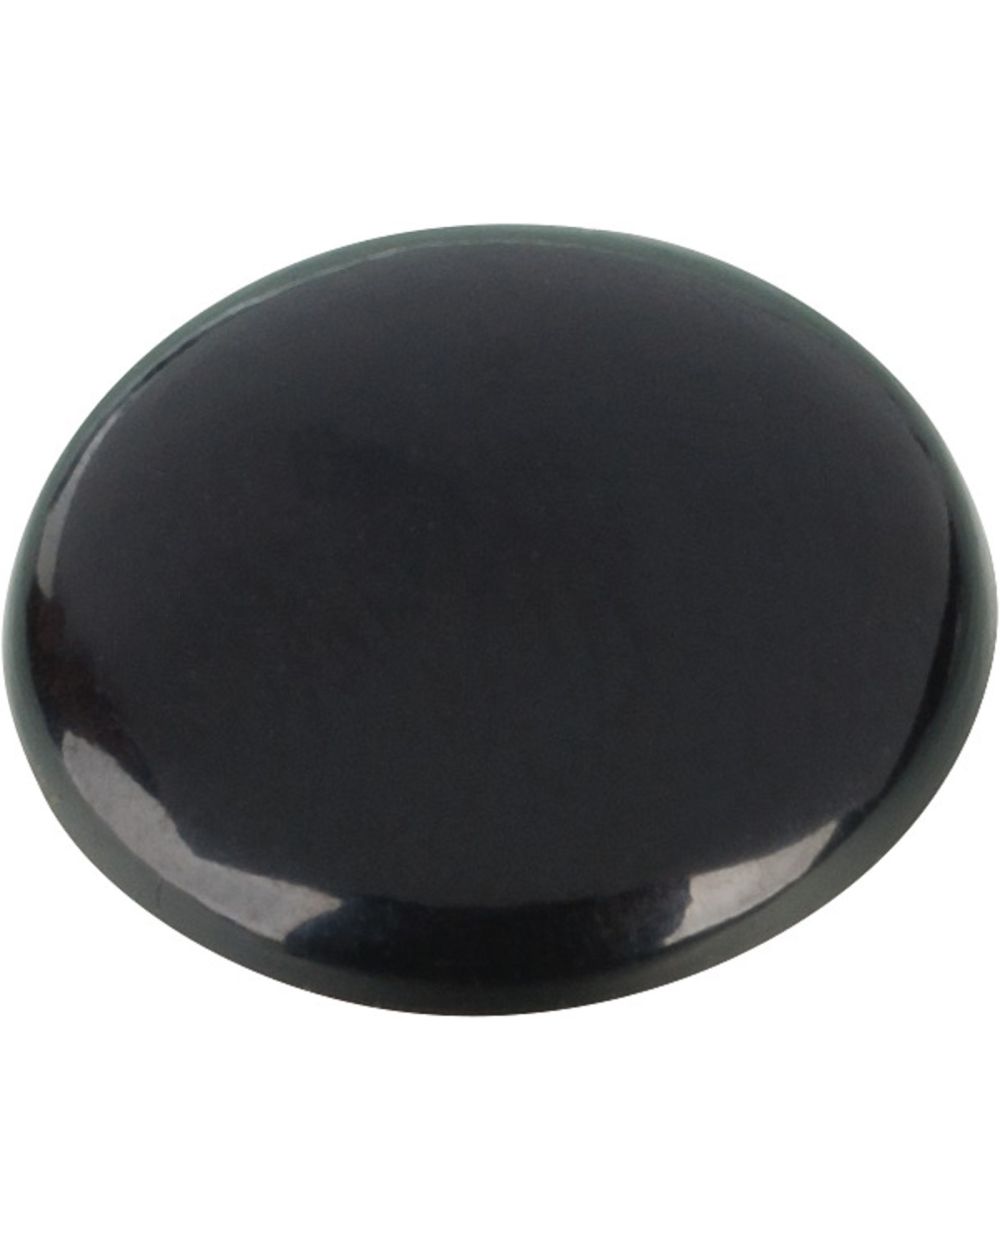 M8 Abdeckkappe, Kunststoff schwarz, für Innensechskant-Schrauben, 1 Stück